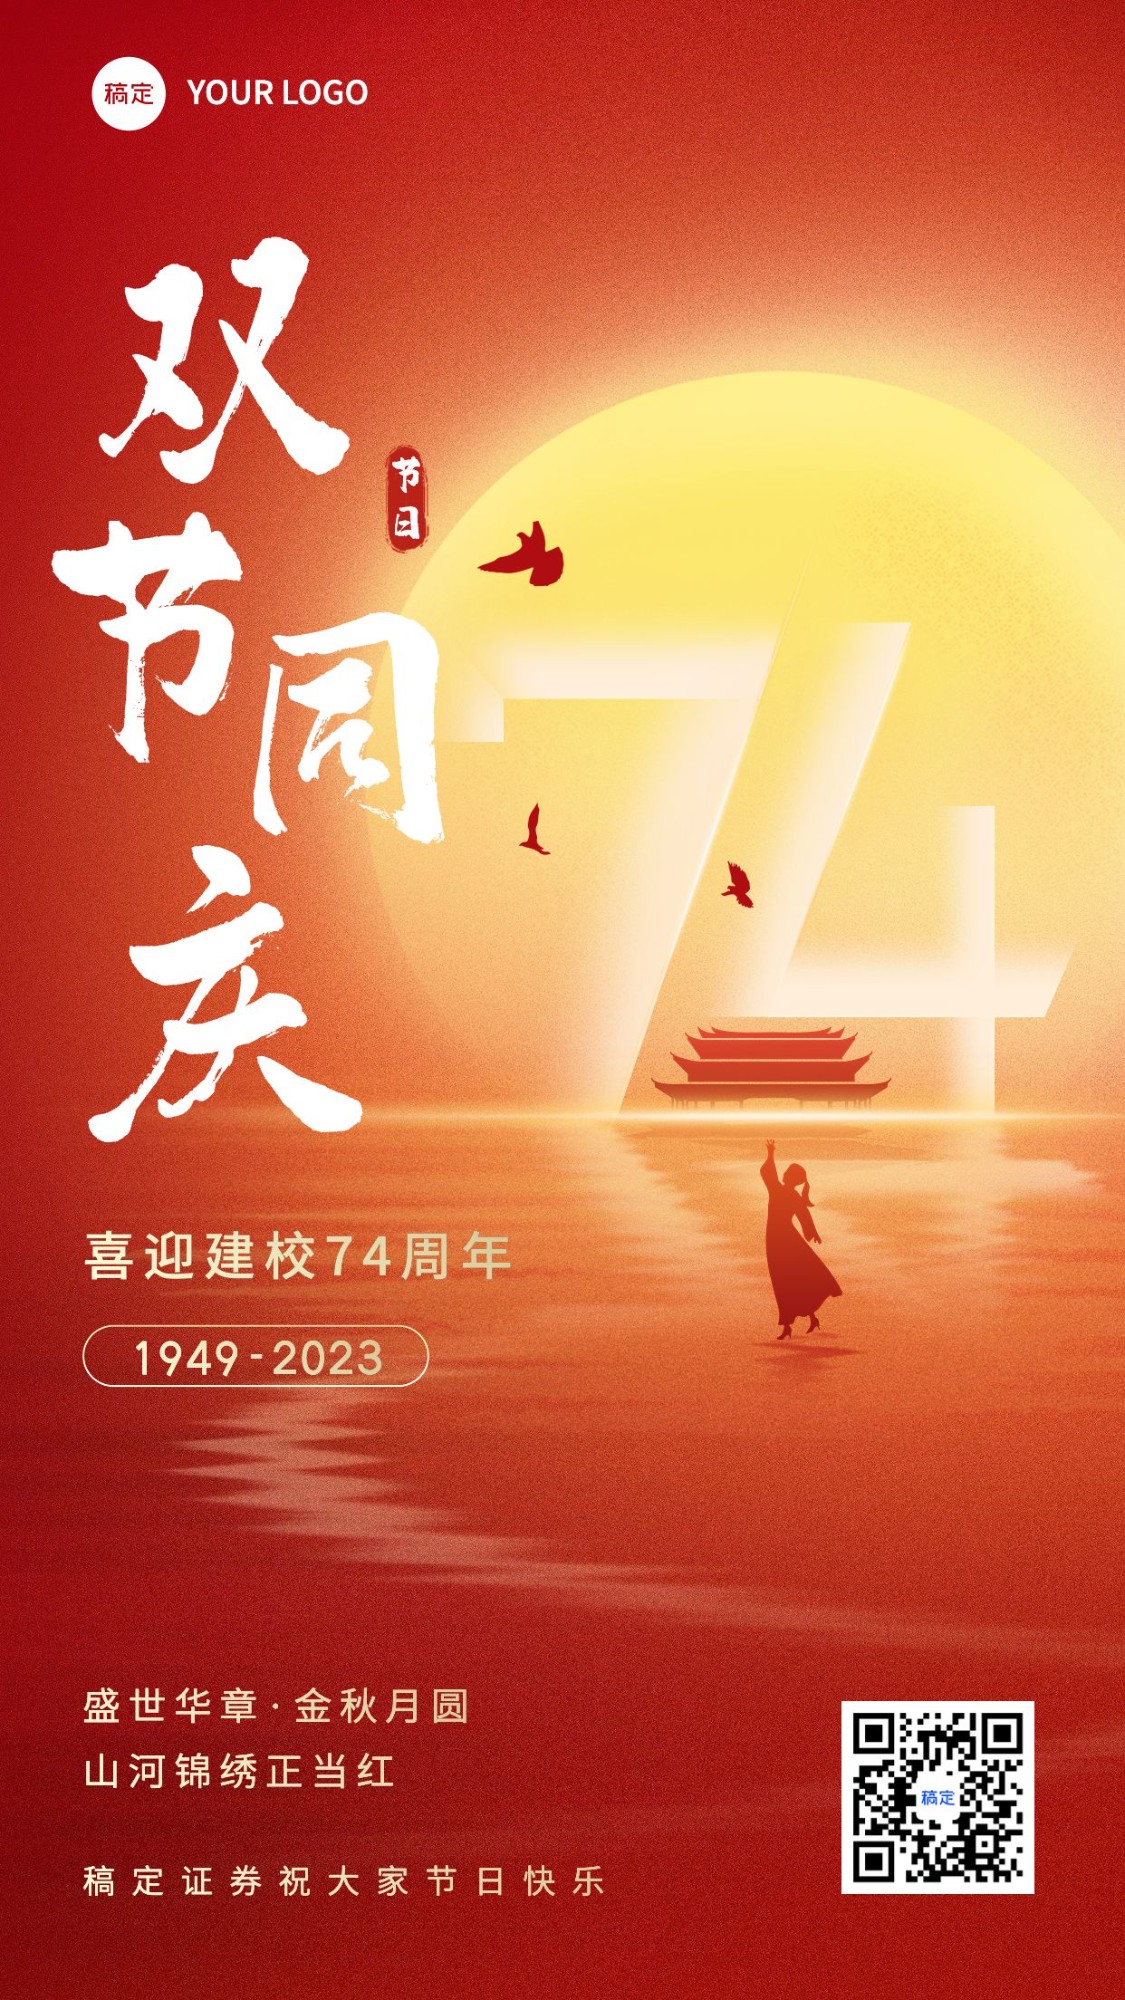 中秋国庆节金融保险节日祝福问候手机海报